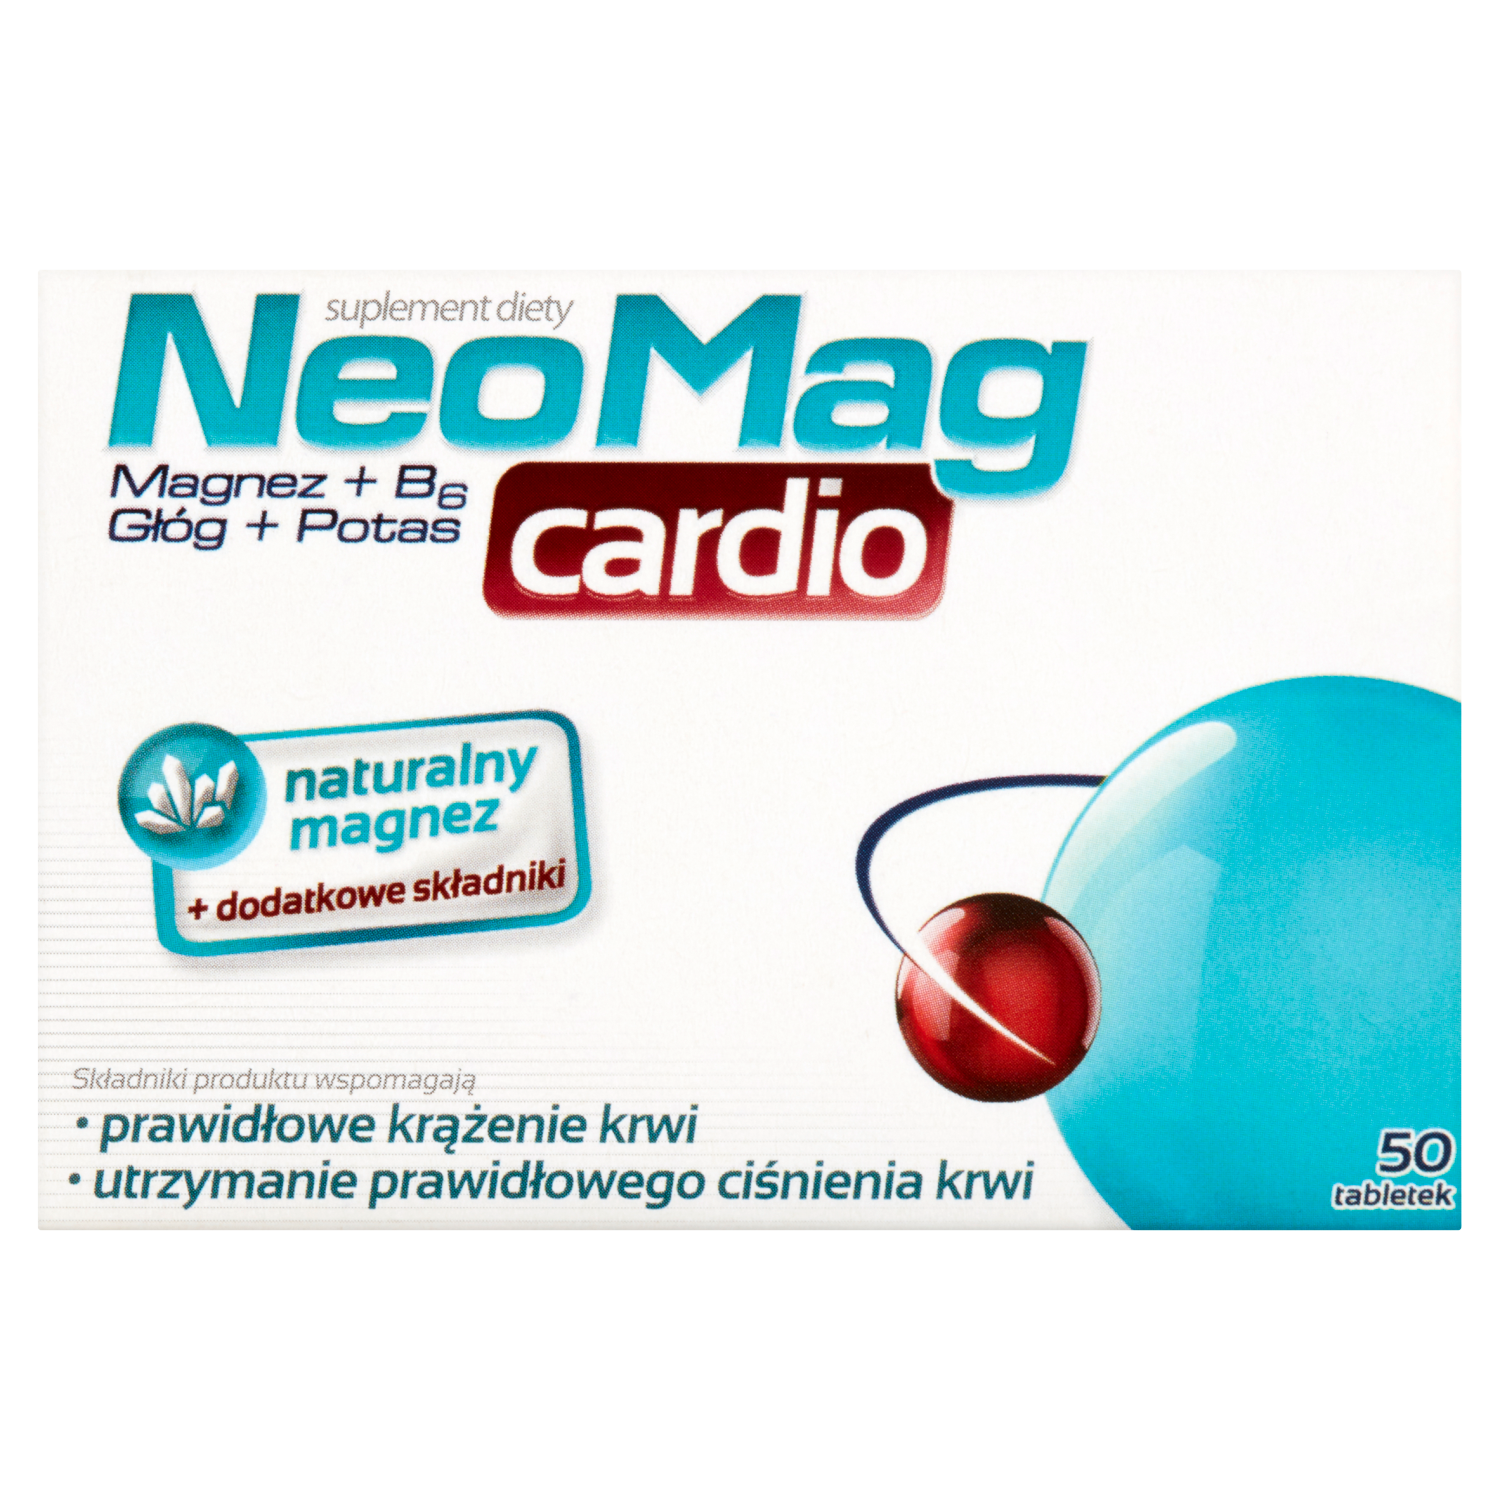 sesja биологически активная добавка 50 таблеток 1 упаковка Neomag Cardio биологически активная добавка, 50 таблеток/1 упаковка